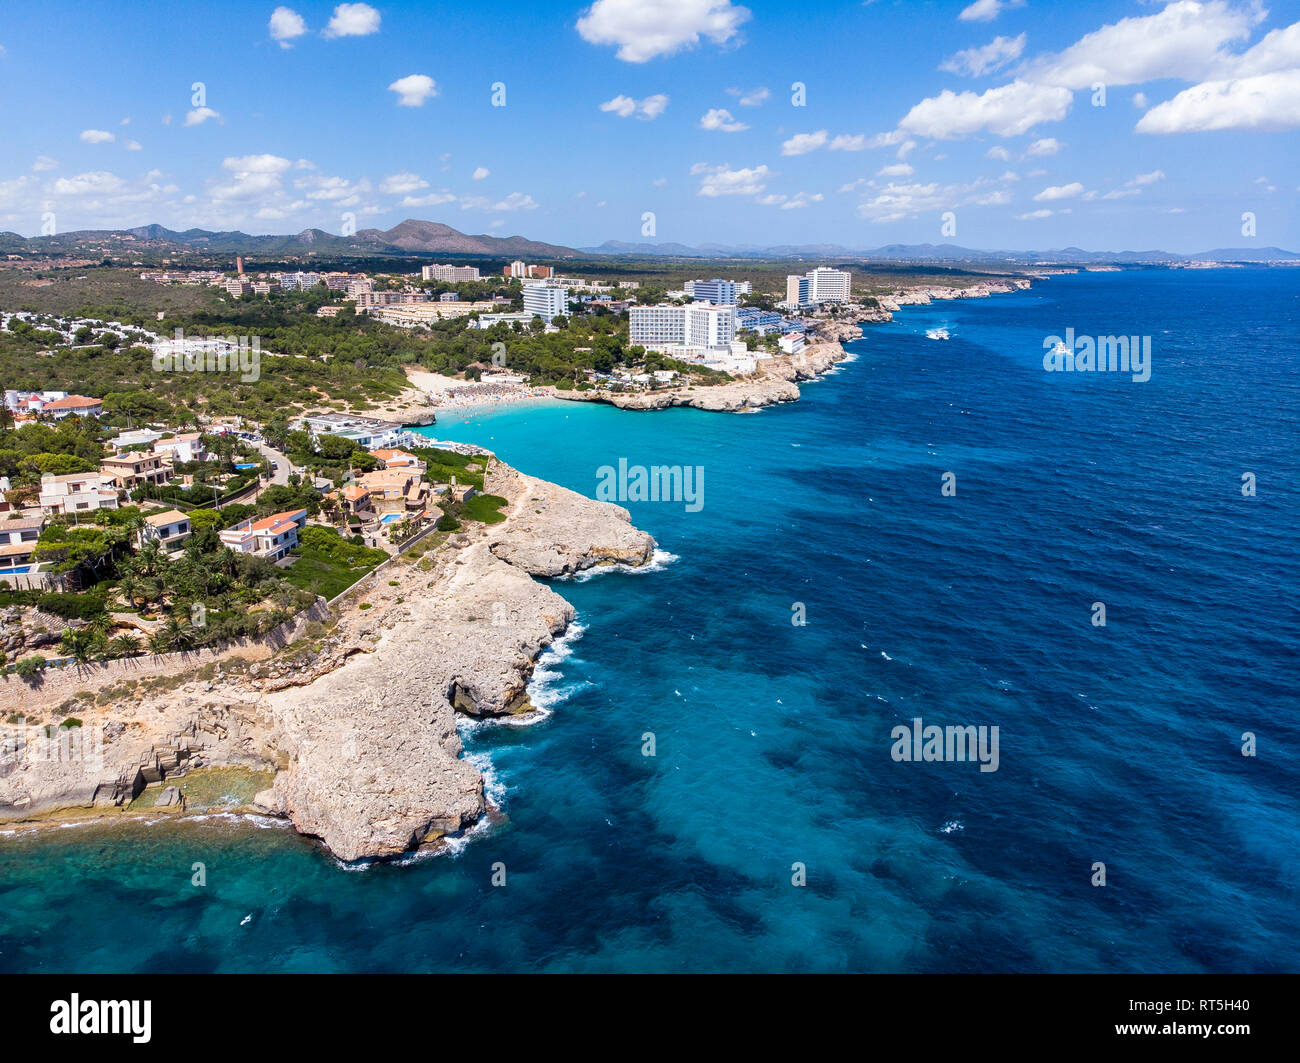 Spagna, Baleares, Mallorca, Porto Colom, veduta aerea di Cala Tropicana e Cala Domingo Foto Stock